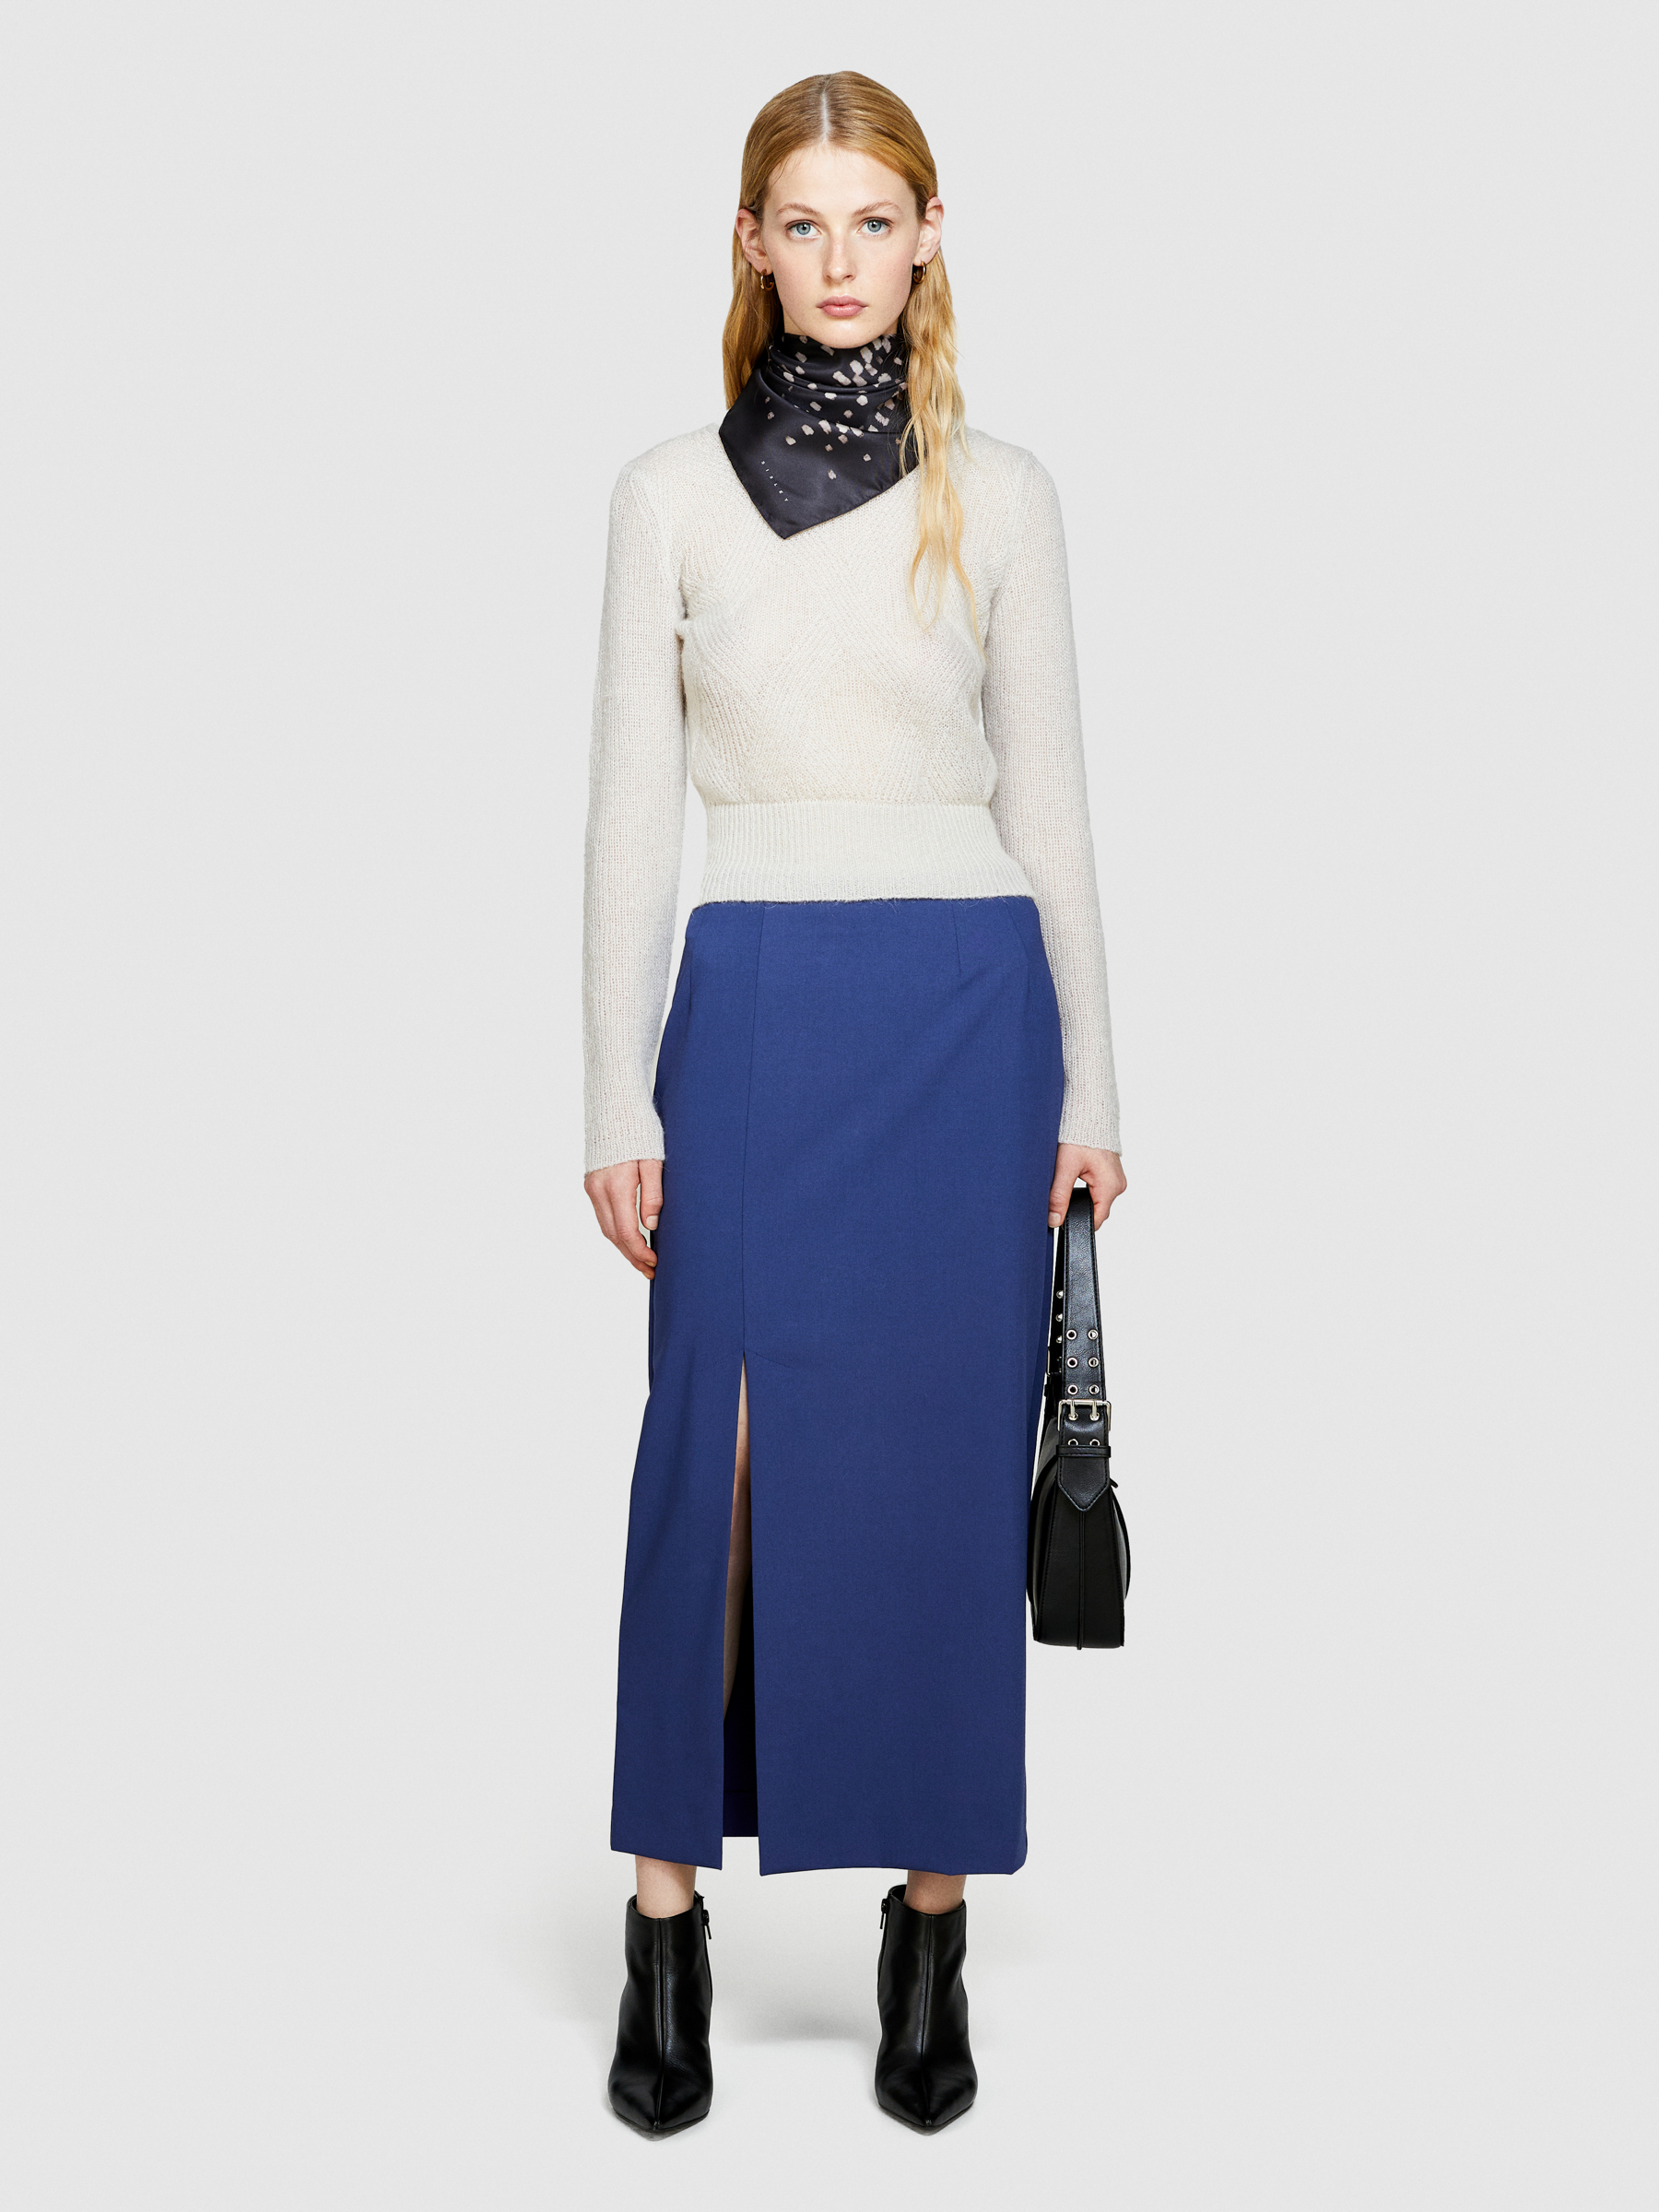 Sisley - Knit Sweater, Woman, Creamy White, Size: XS